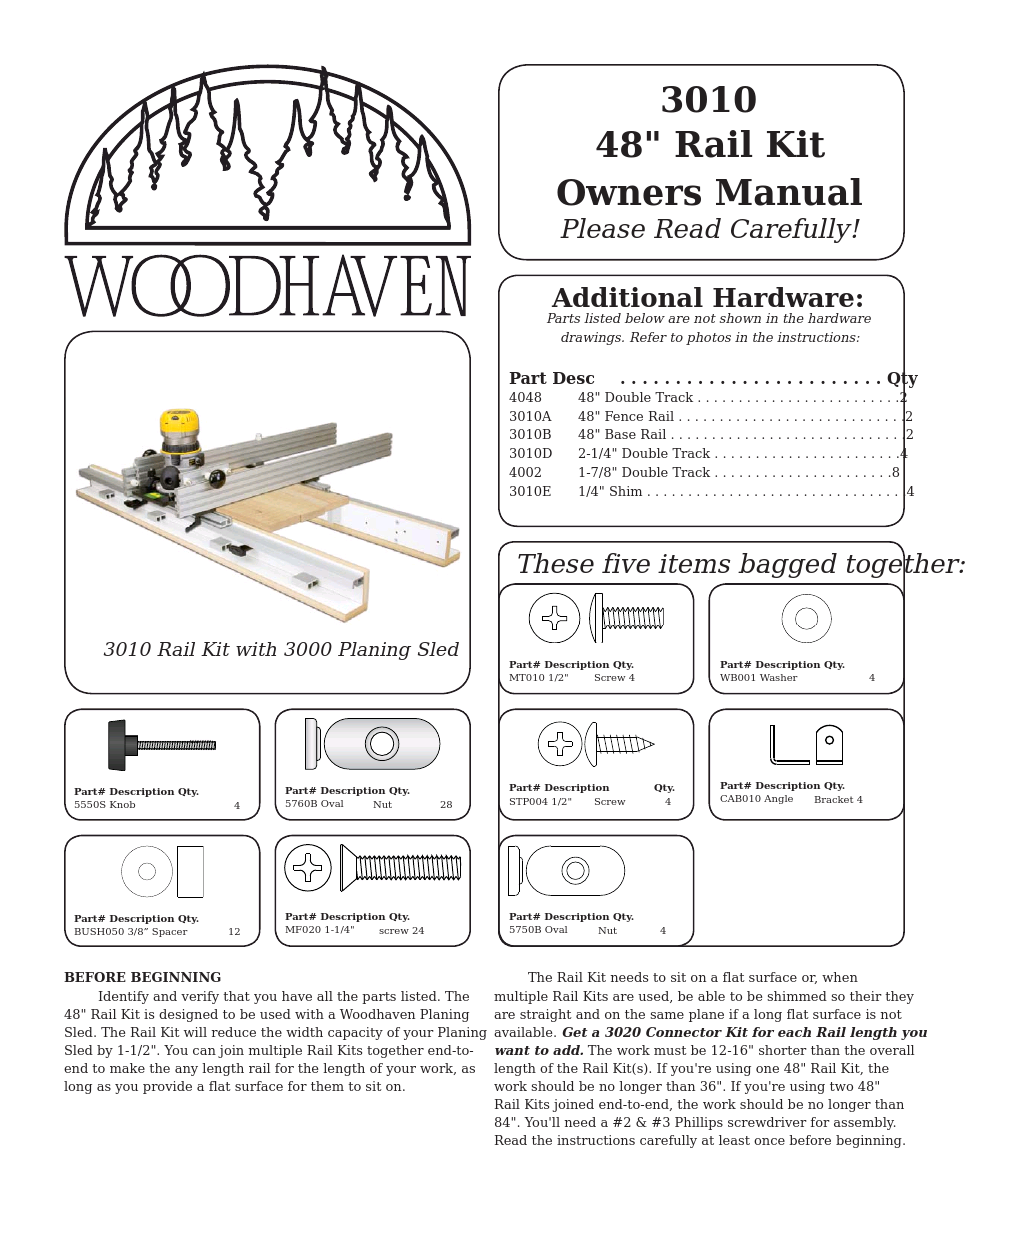 3010: Rail Kit